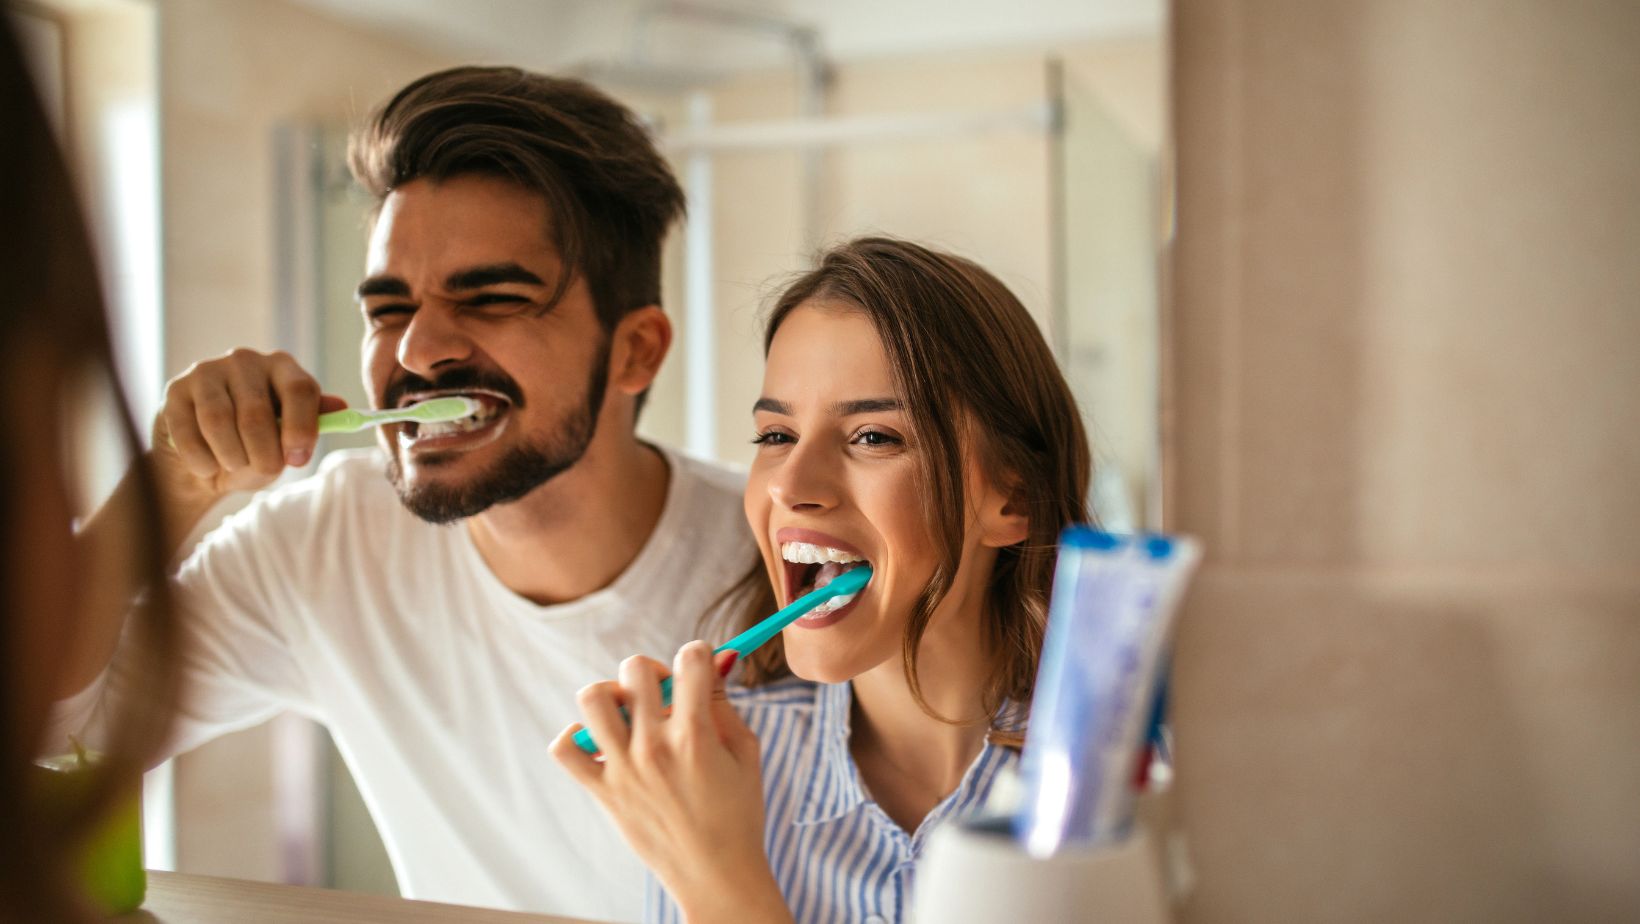 Higiene bucal perfeita: saiba como fazer as escolhas certas na hora da escovação